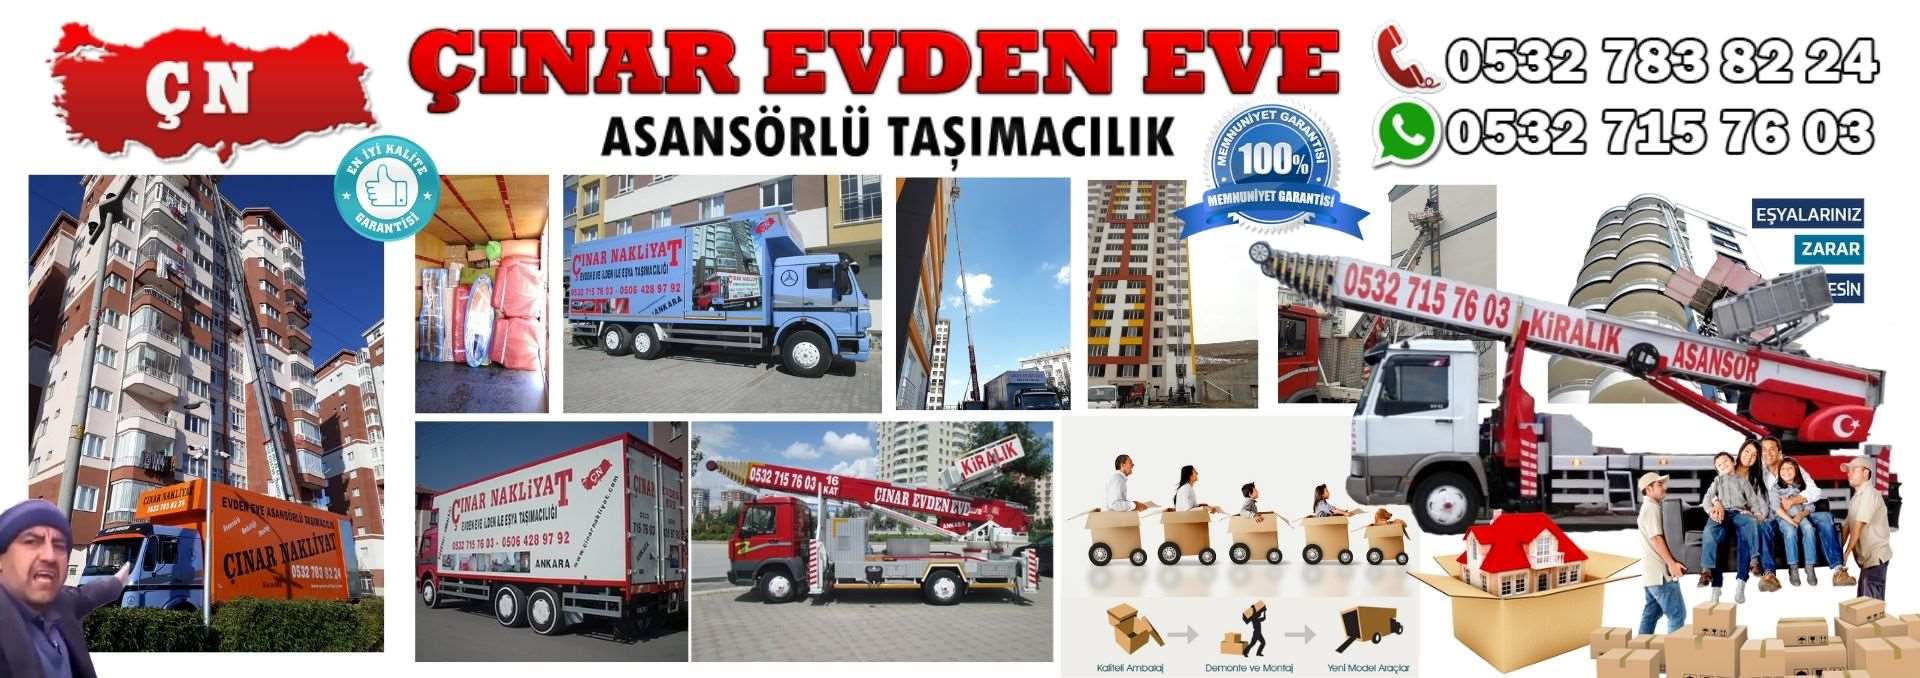 Ankara Yapracık Evden Eve Asansörlü Ev Eşyası Taşıma 0532 715 76 03